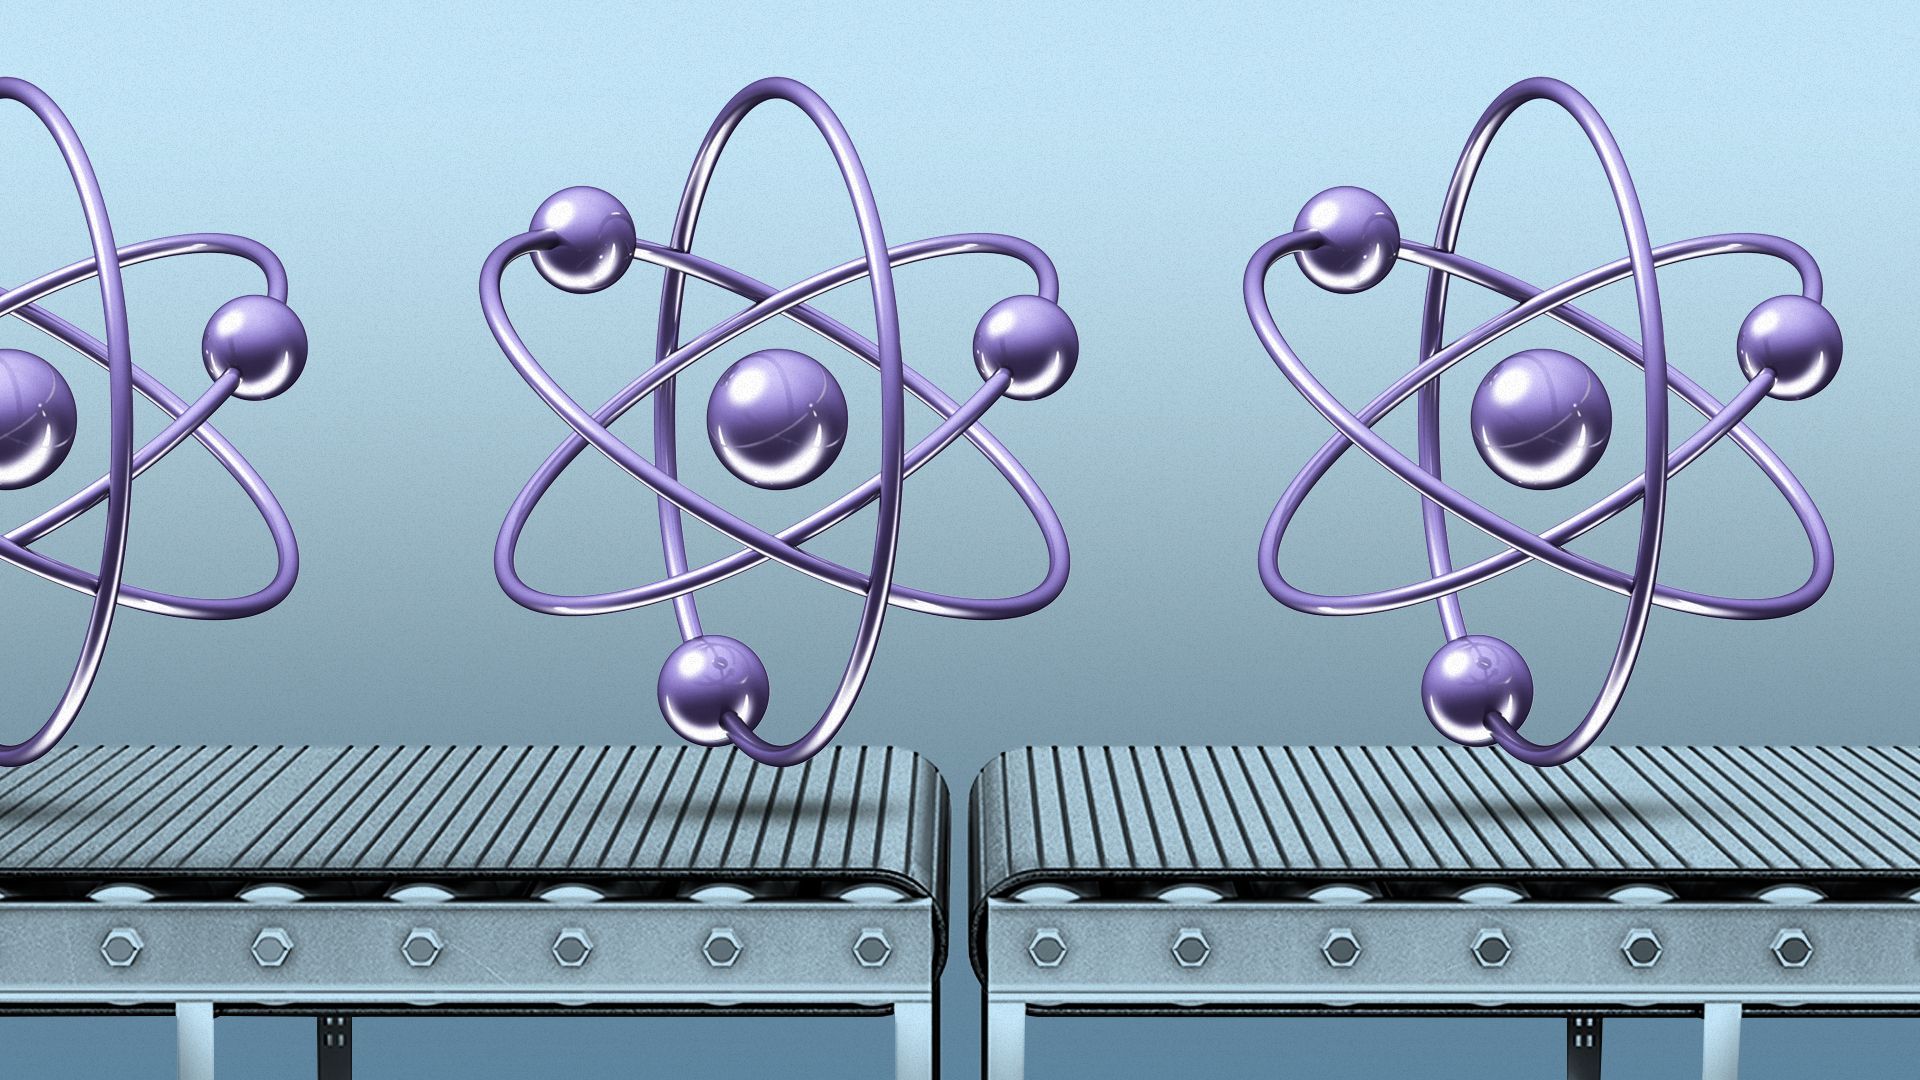 Illustration of atoms floating above a conveyor belt